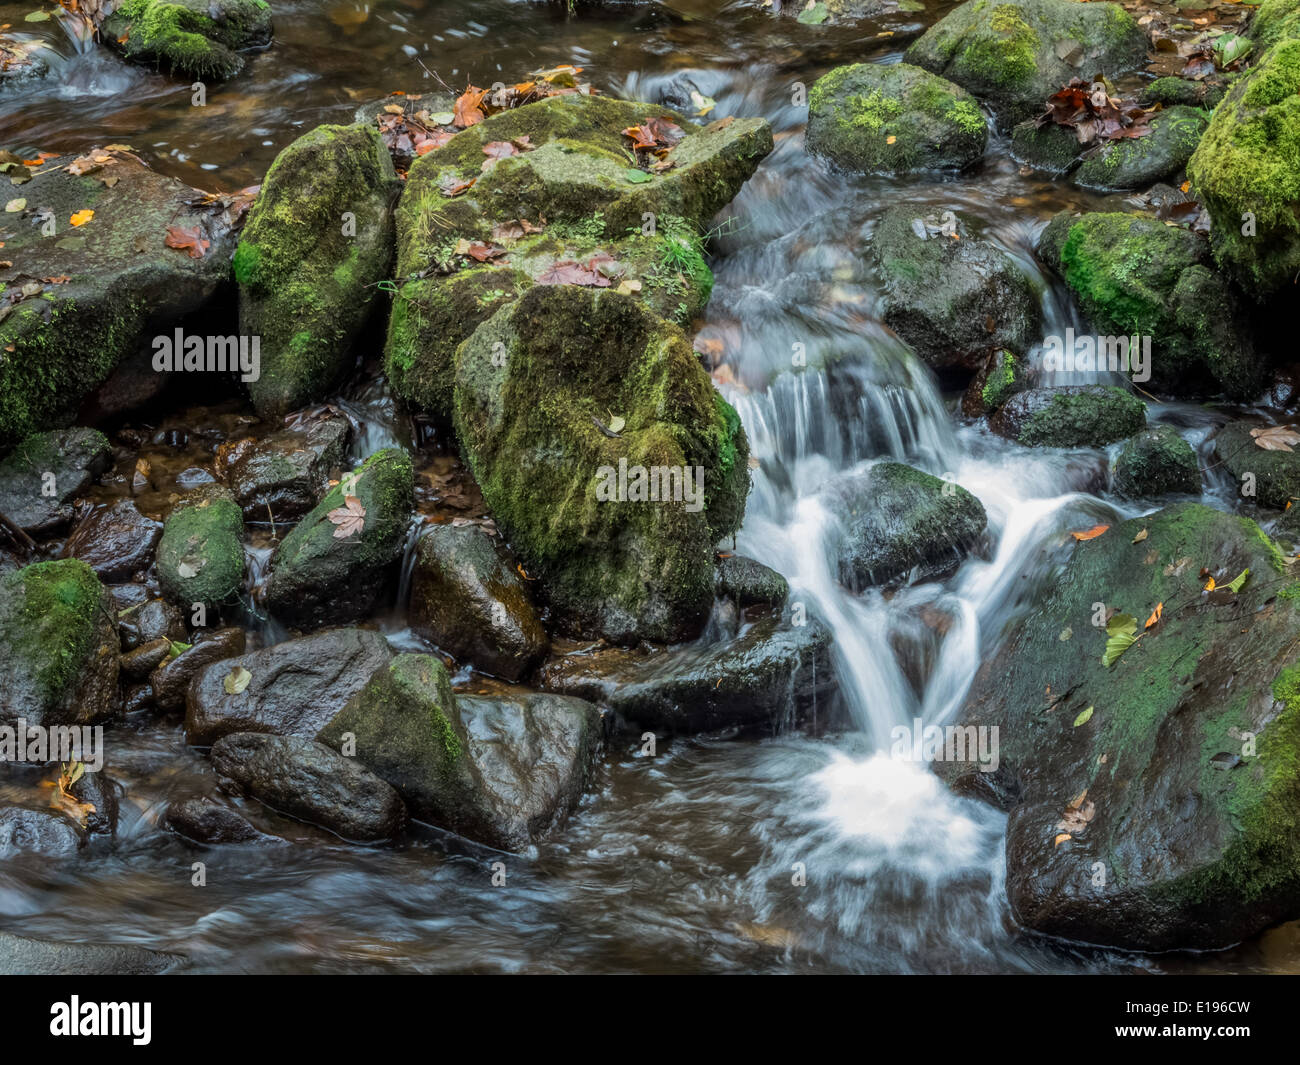 Ein Bach mit Steinen und fliessendem Wasser. Landschaft erleben in der Natur. Stock Photo